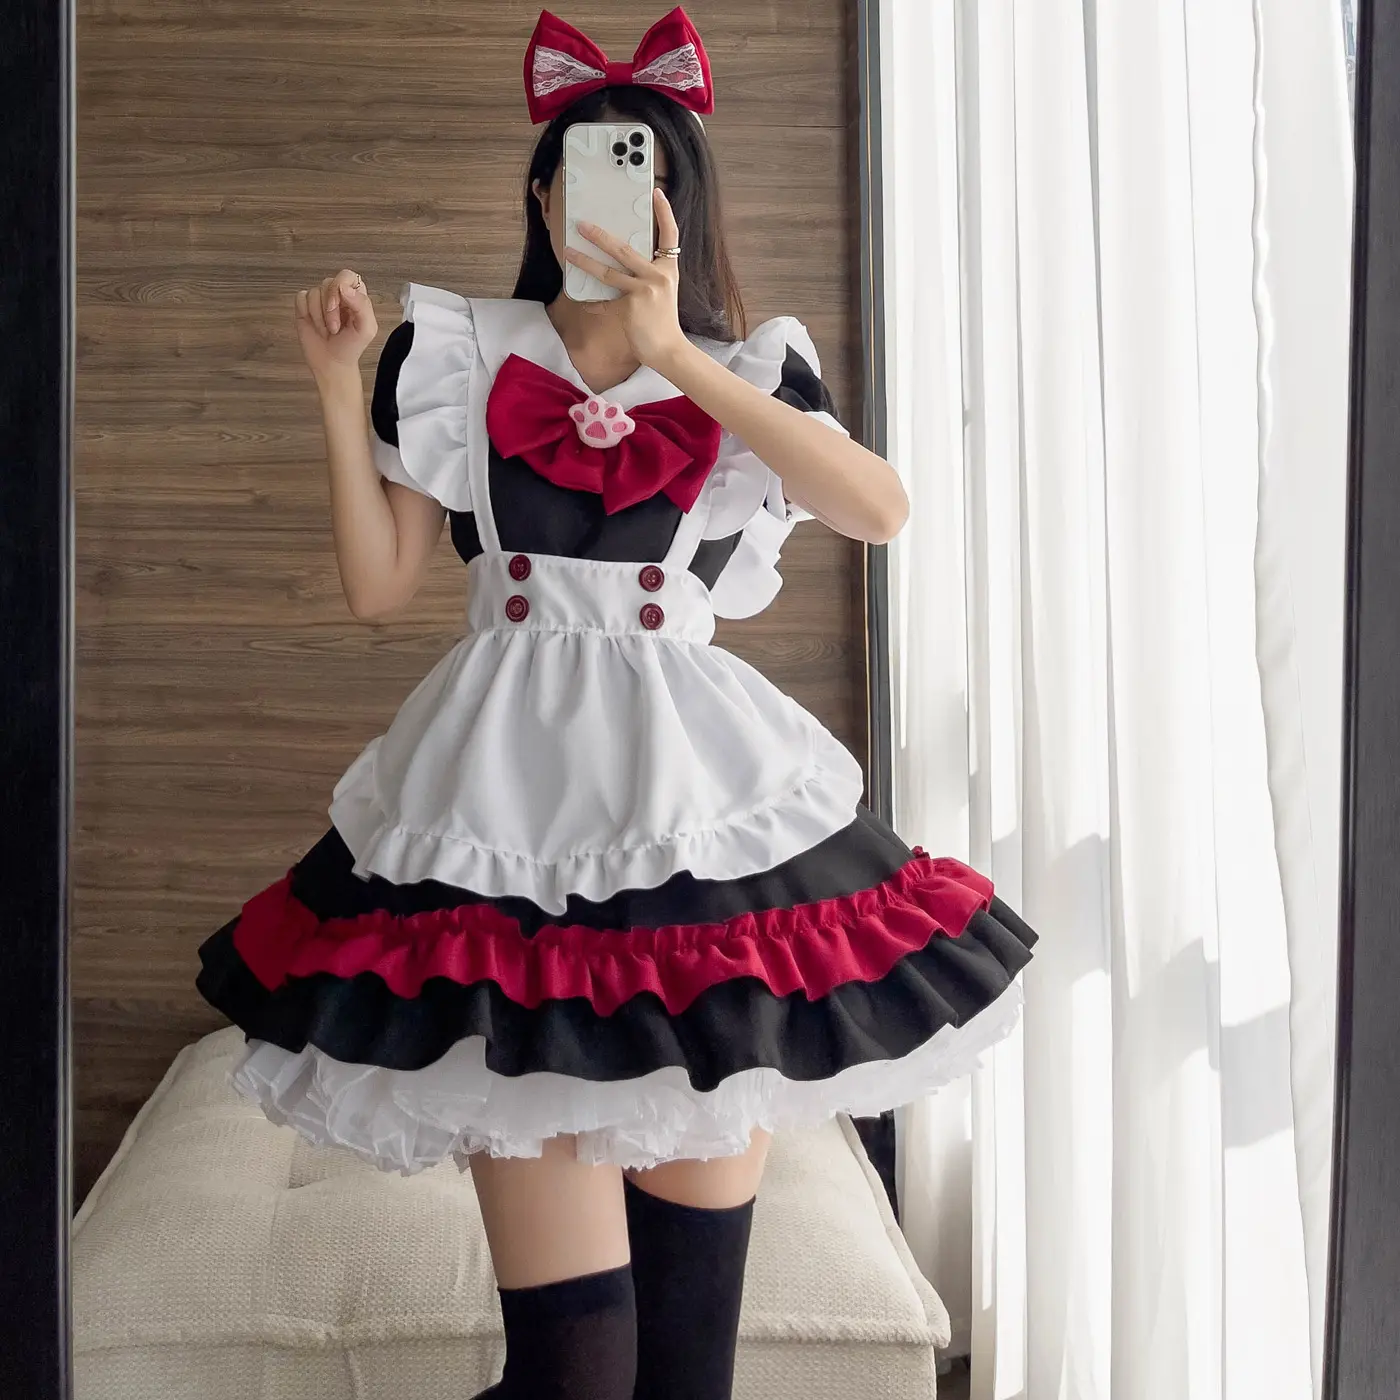 Halloween Vampir Little Devil Maid Lolita Gothic Stil schwarz und rot Maid cos Anime Rollenspiel Kostüm